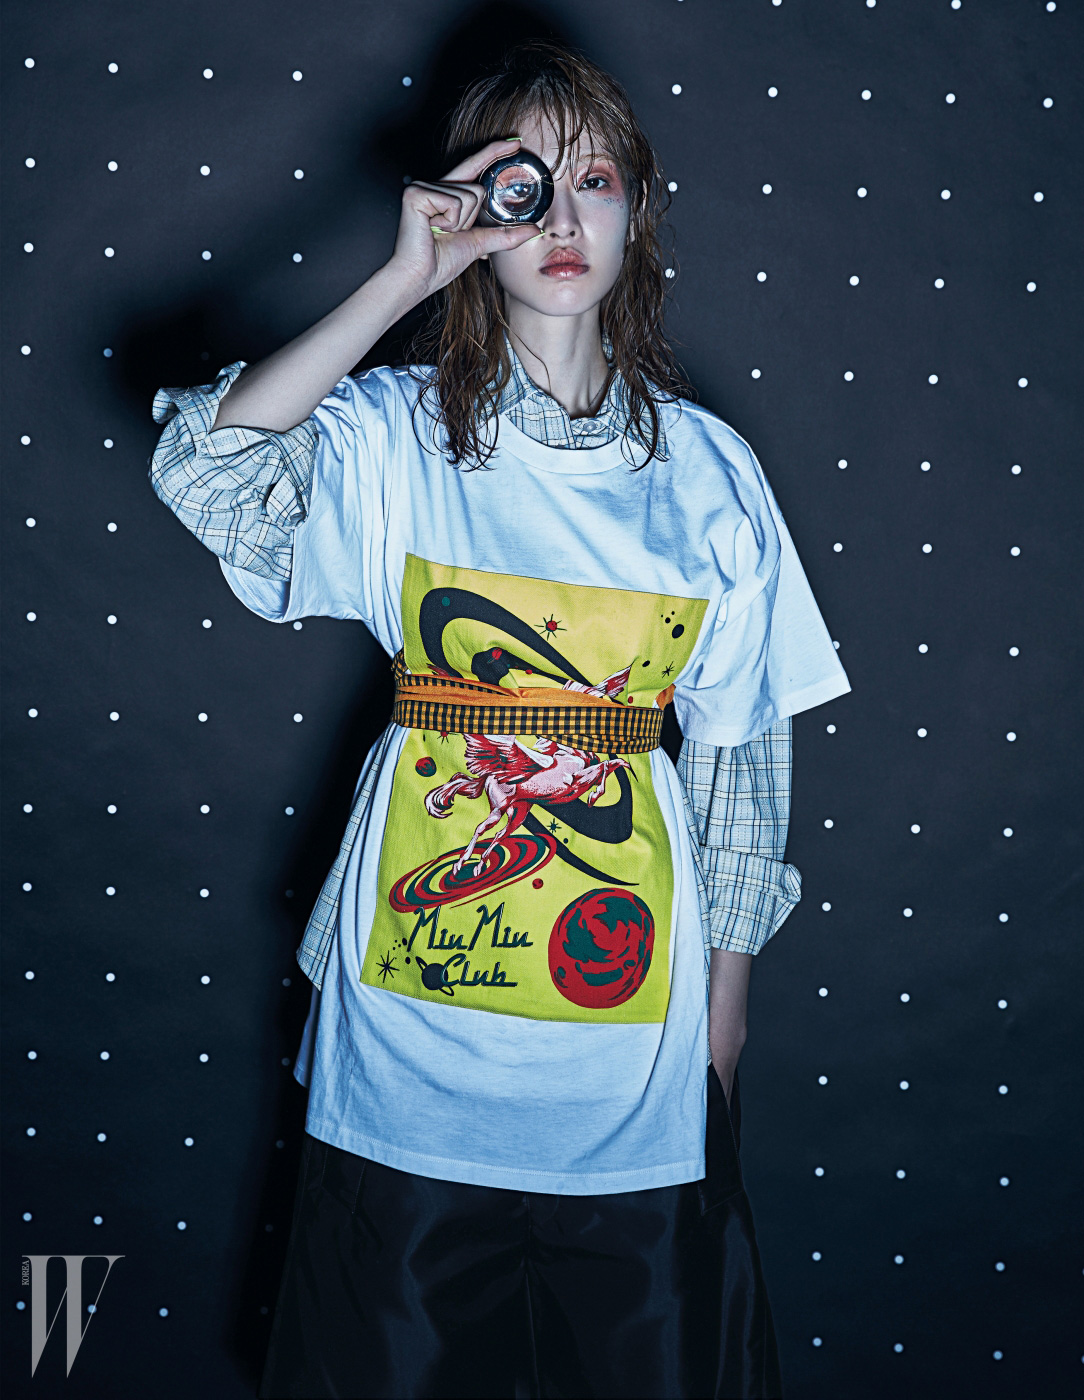 레이어드해 연출한 셔츠와 우주의 모습을 표현한 미우미우 클럽 프린트 티셔츠, 스커트와 벨트는 모두 Miu Miu 제품.